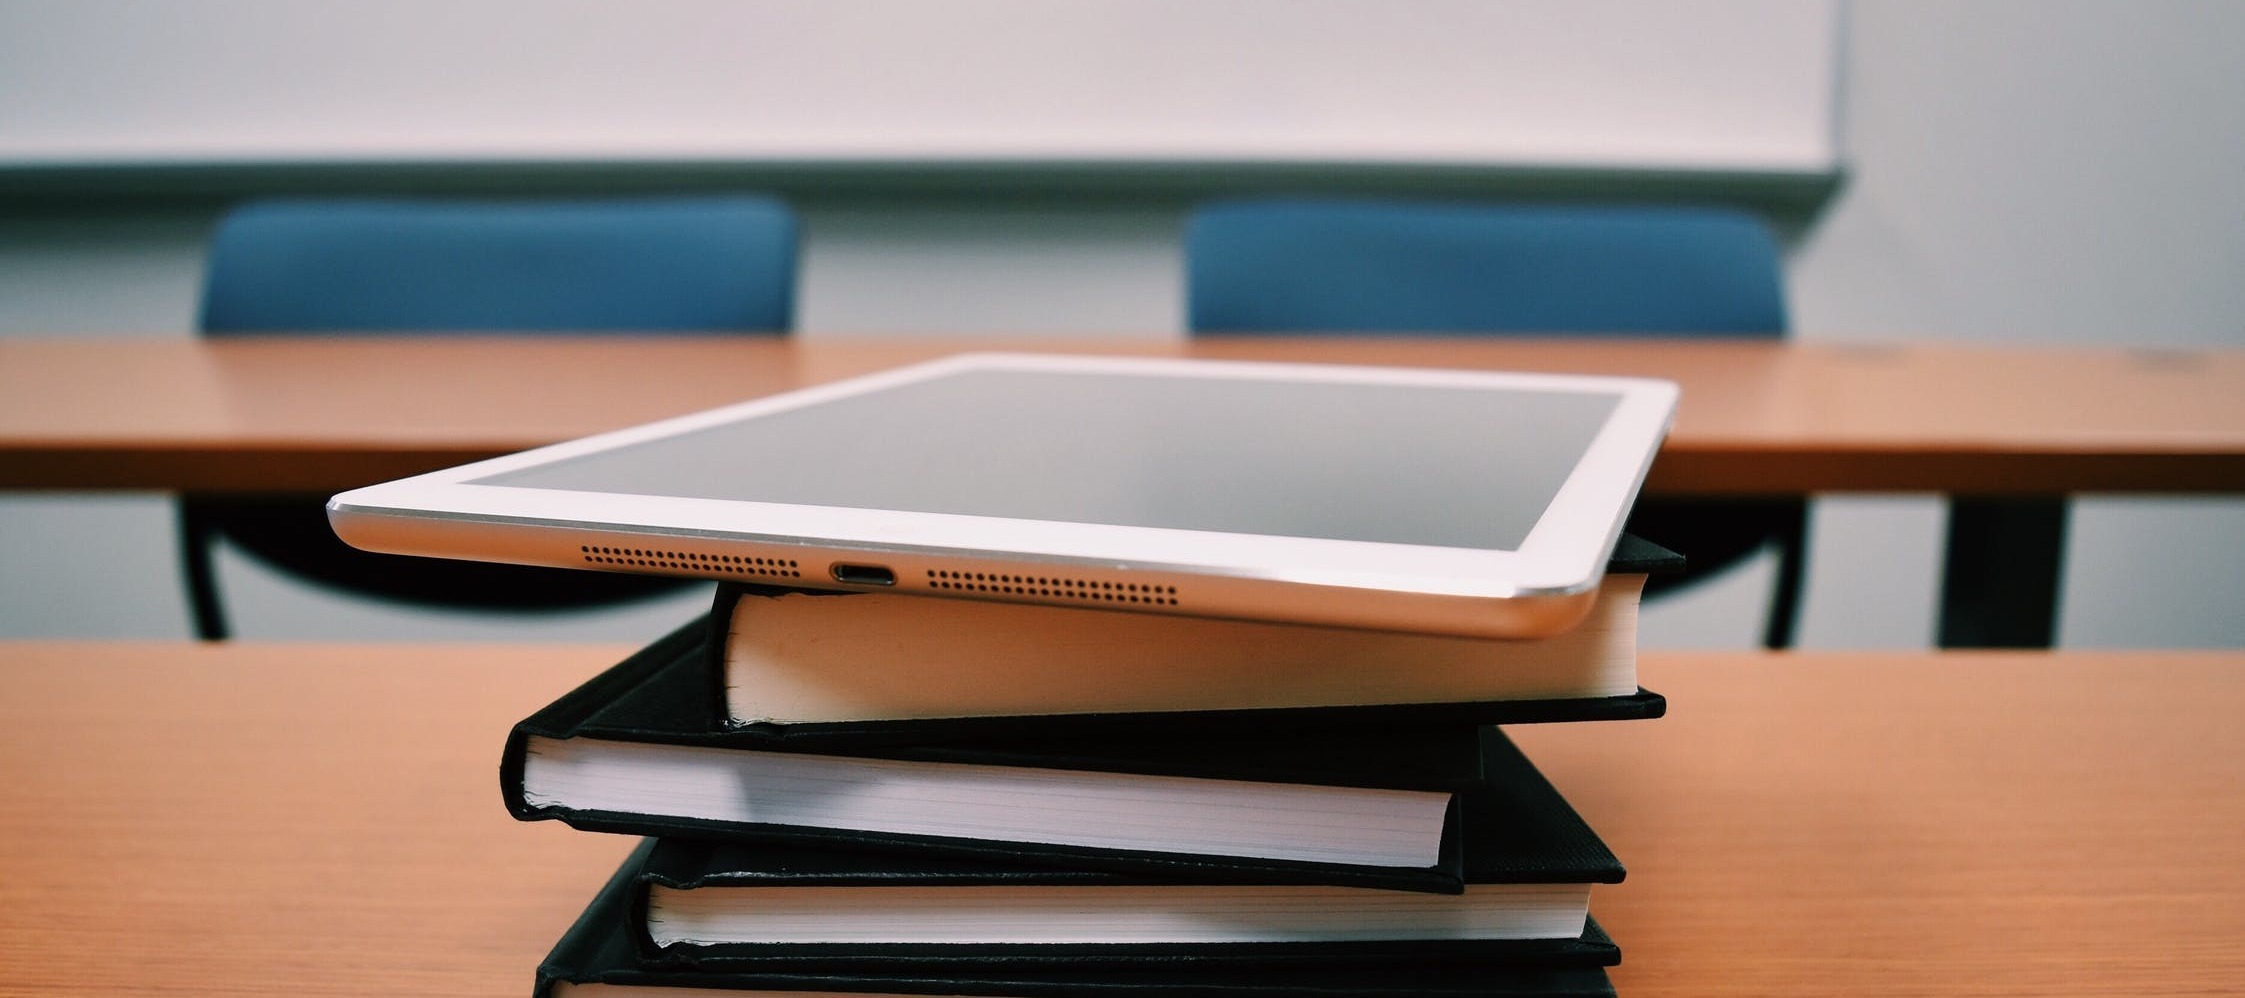 Smarte Klassenzimmer - Tablet statt Kreide